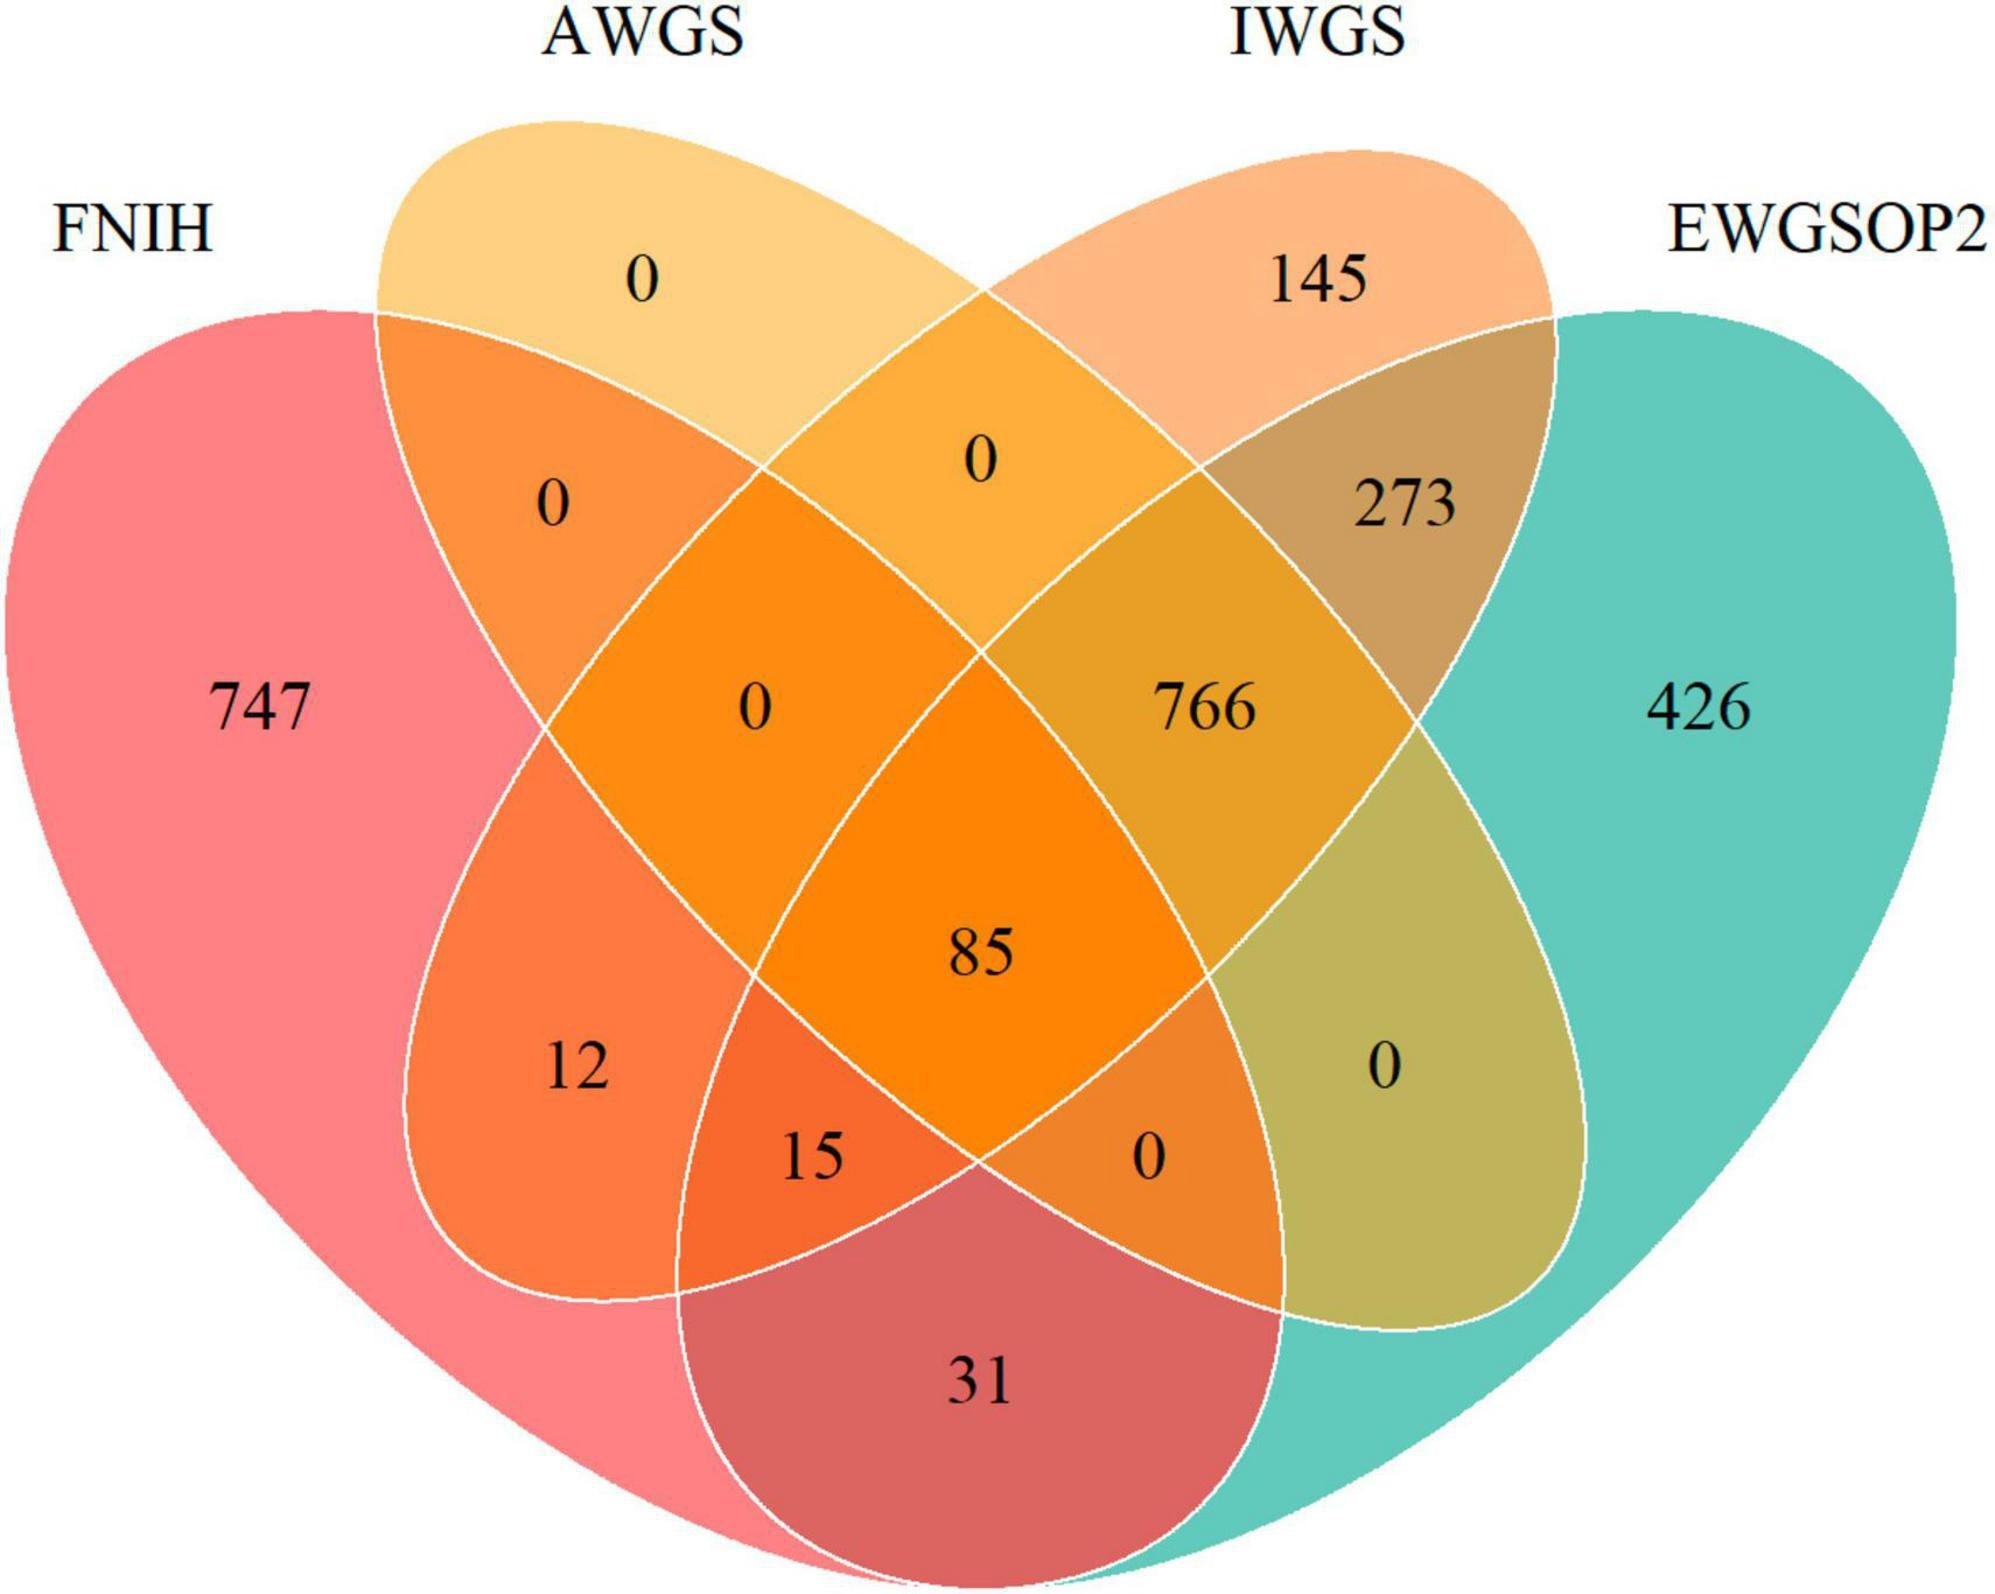 Диаграмма Венна, показывающая совпадение распространенности низкой мышечной массы по различным определениям FNIH, EWGSOP2, AWGS и IWGS.